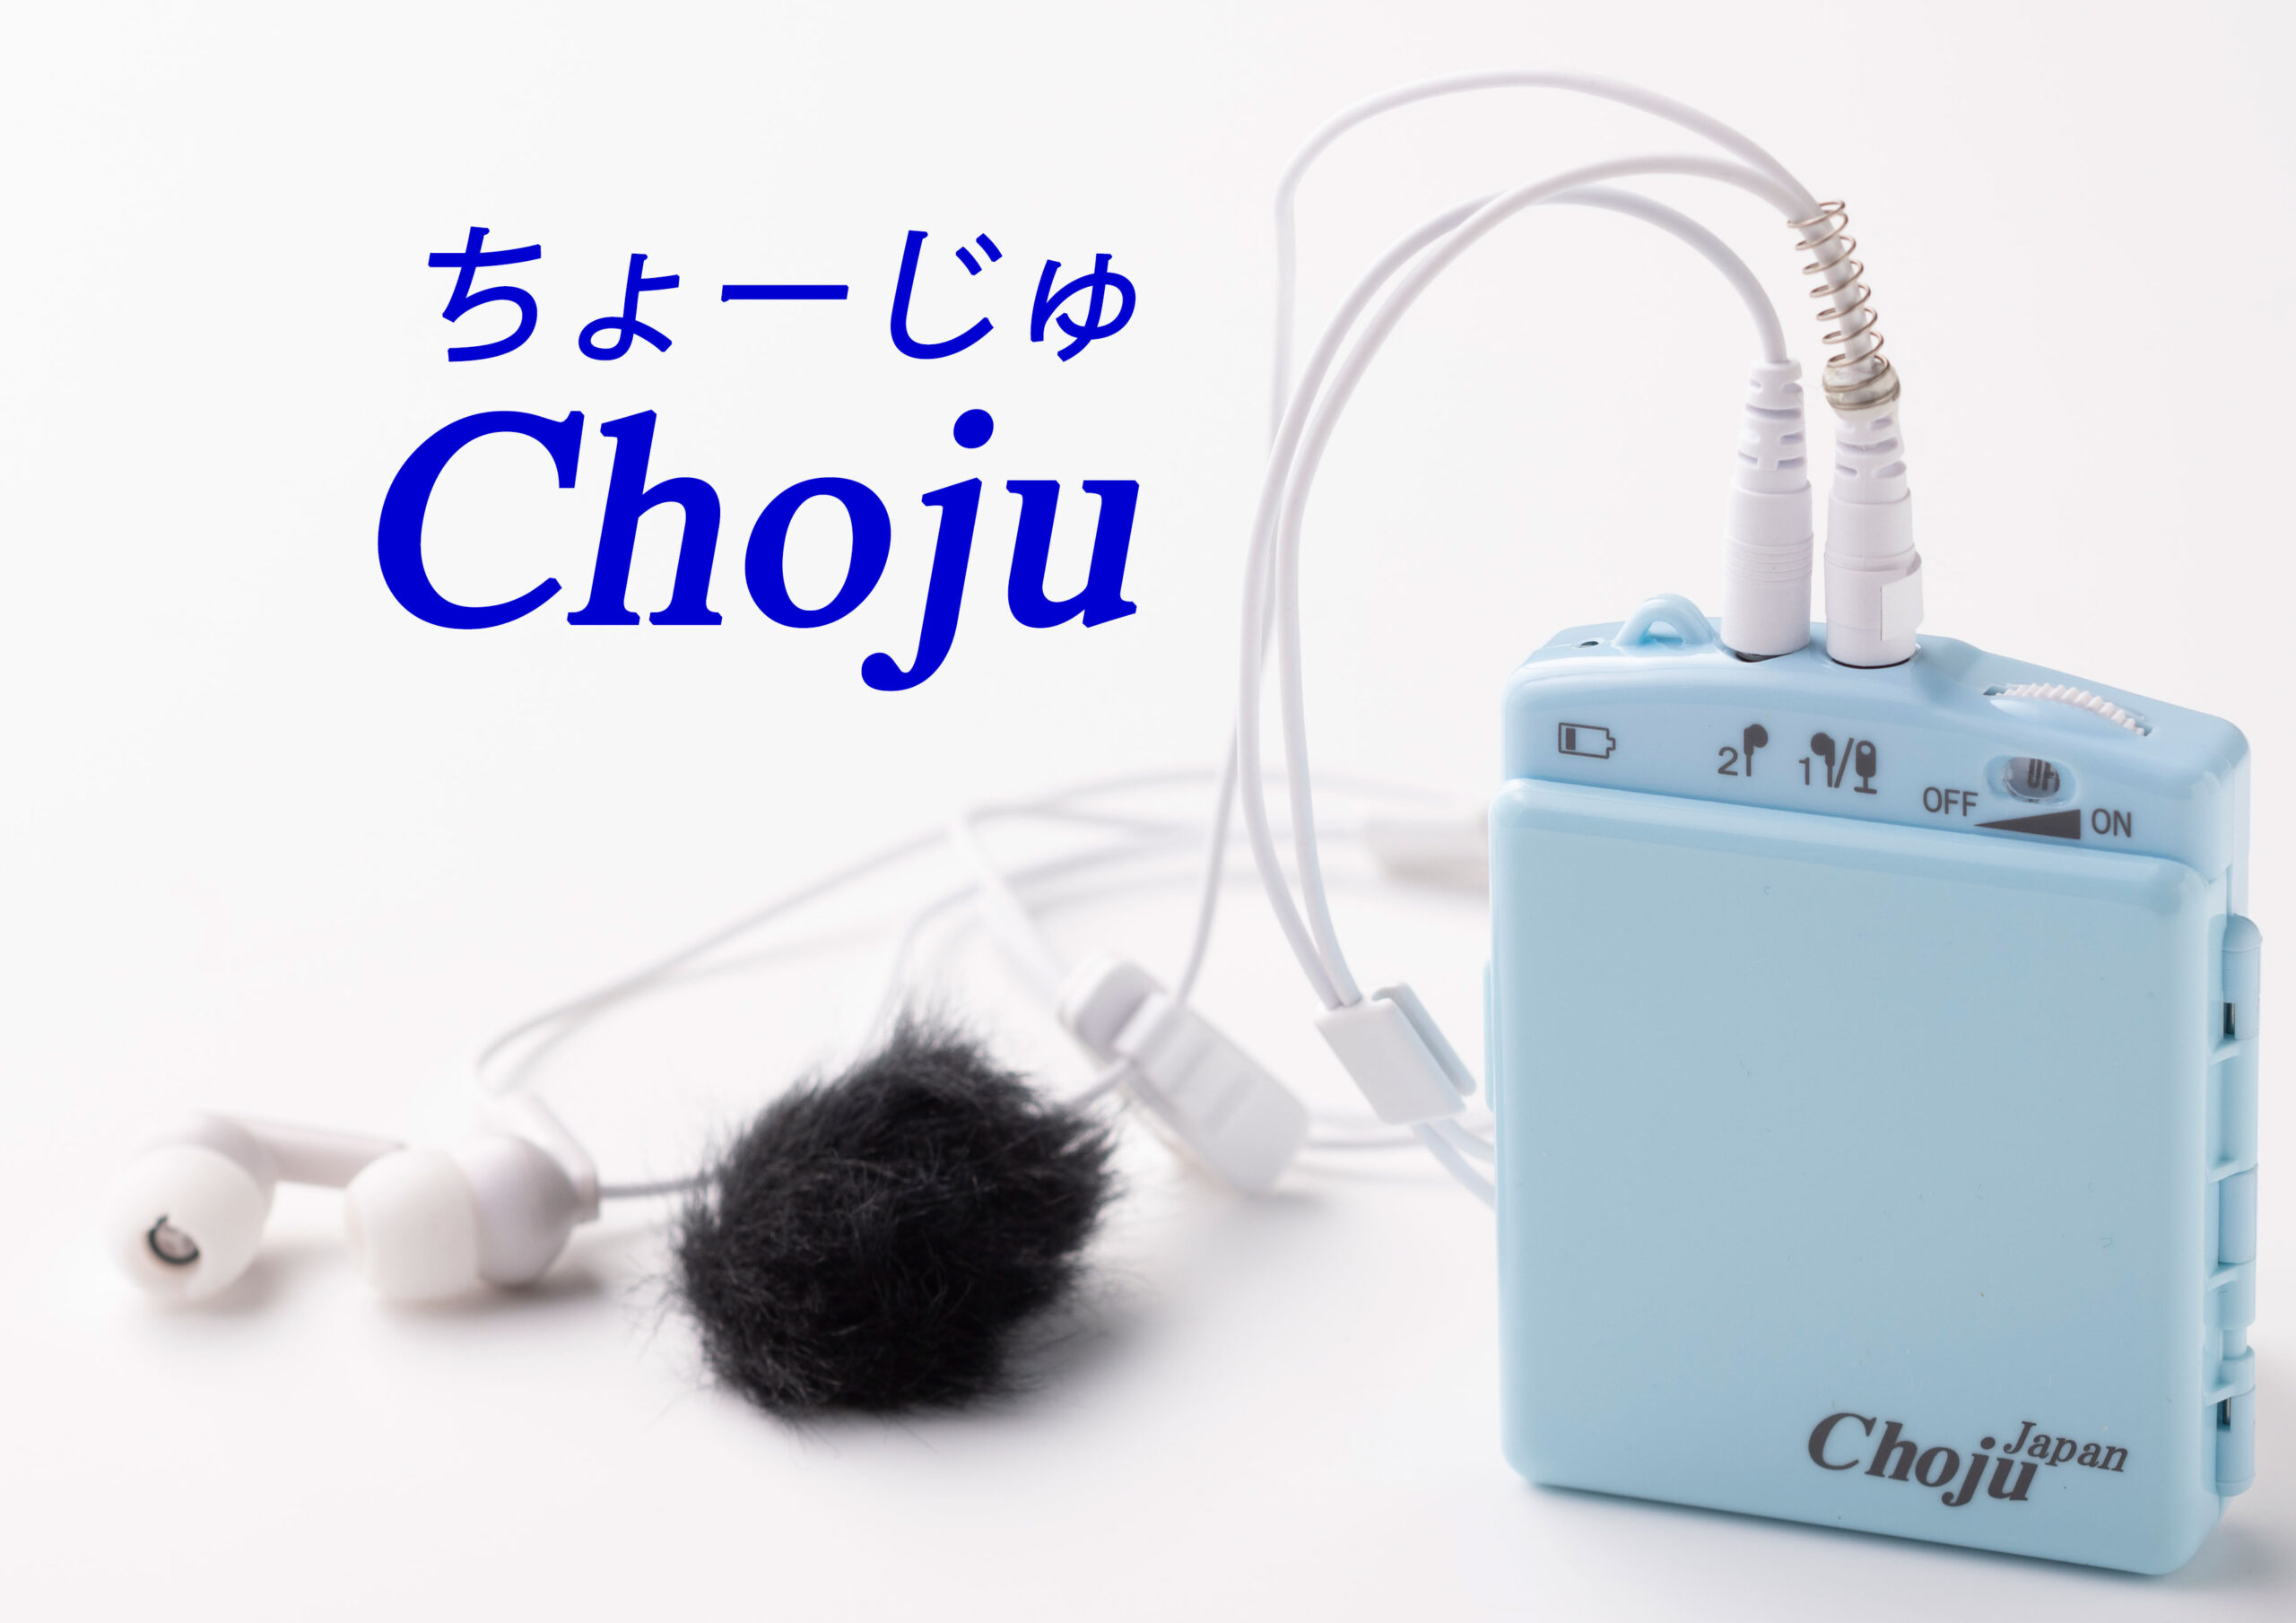 検索 補聴器 検査不要日本製高機能集音器「ChojuⅡ」メーカー試聴後 